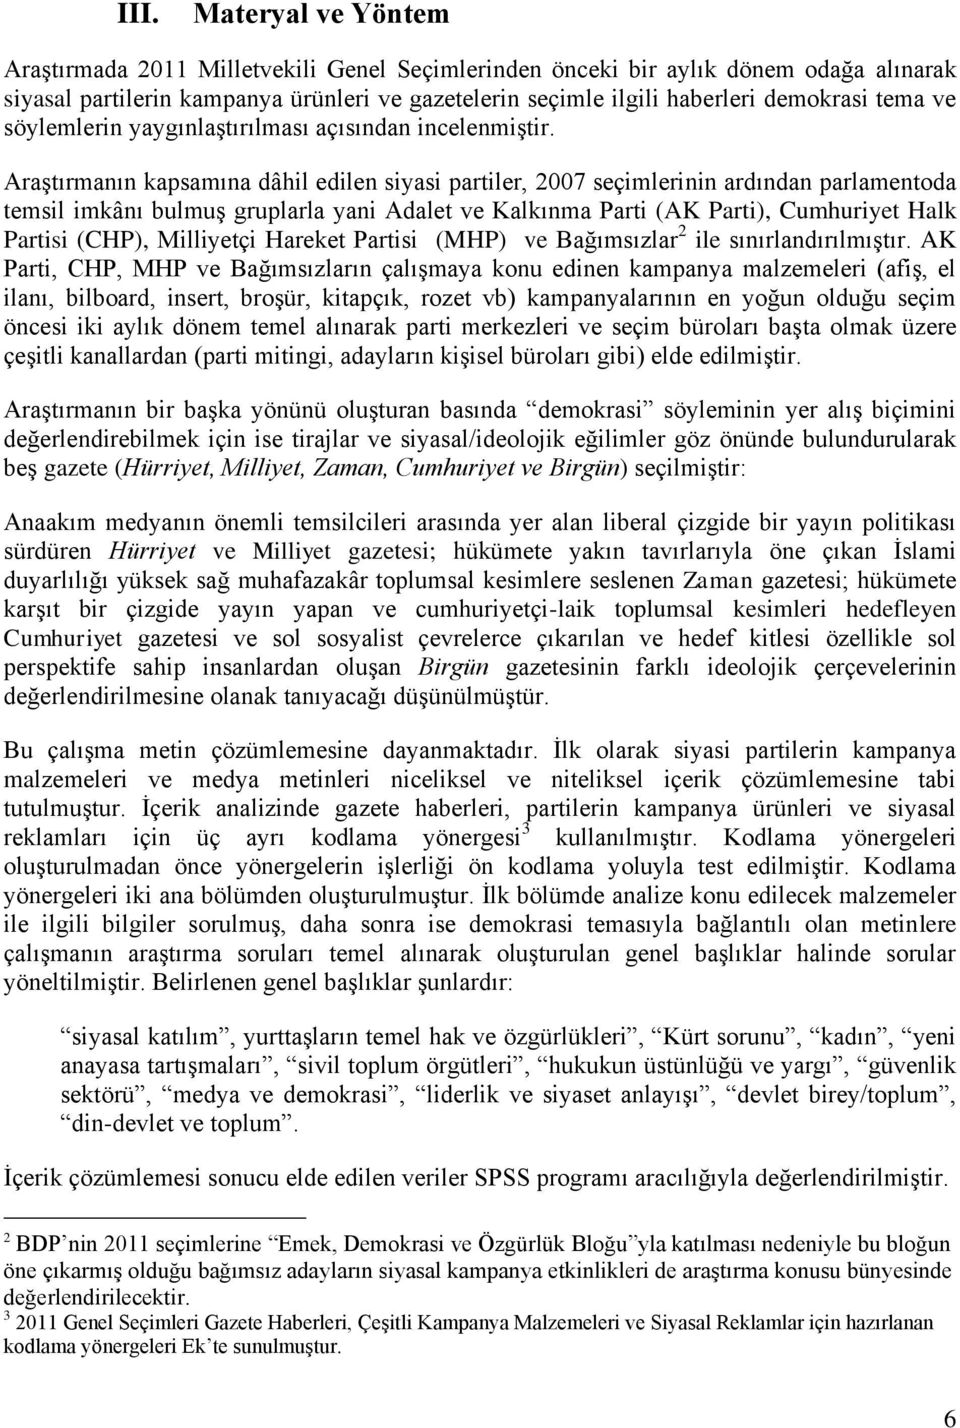 Araştırmanın kapsamına dâhil edilen siyasi partiler, 2007 seçimlerinin ardından parlamentoda temsil imkânı bulmuş gruplarla yani Adalet ve Kalkınma Parti (AK Parti), Cumhuriyet Halk Partisi (CHP),